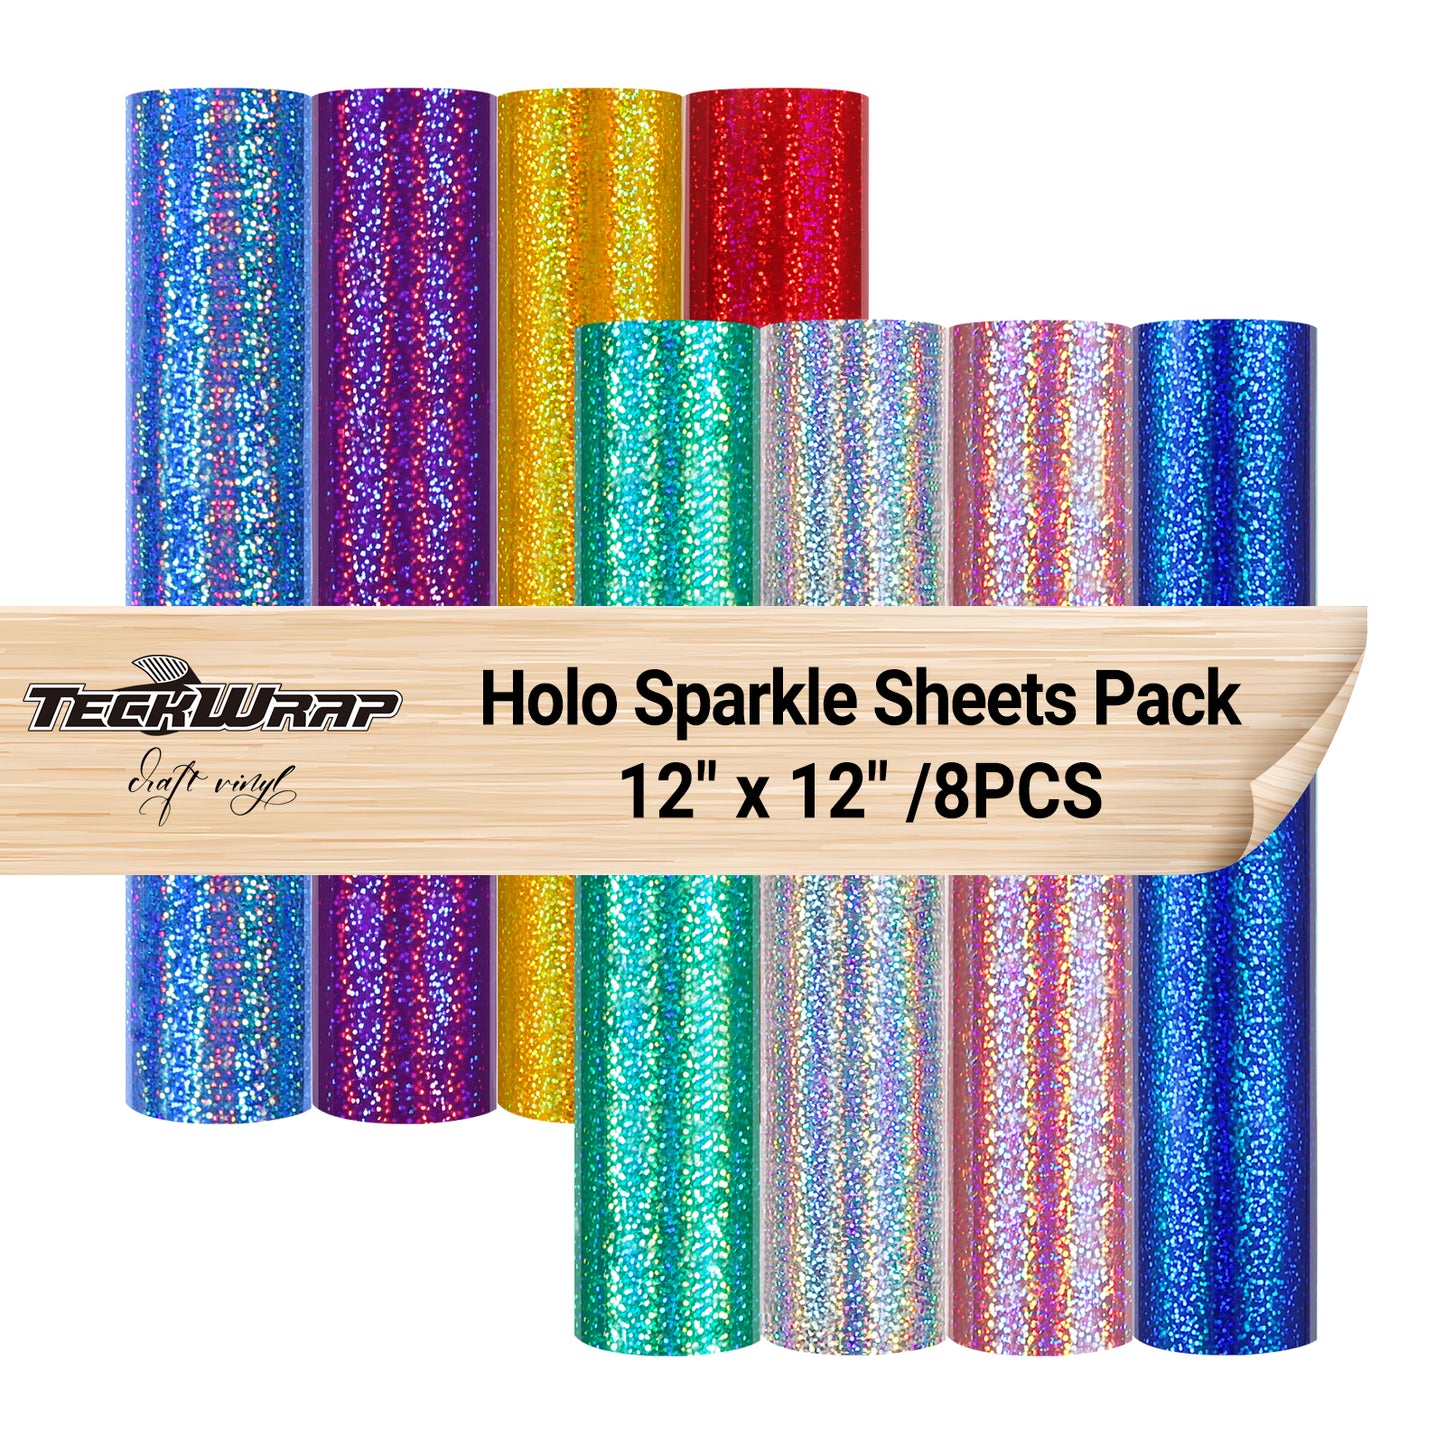 Holographic Sparkle Vinyl Sheets Pack( 8 PCS)